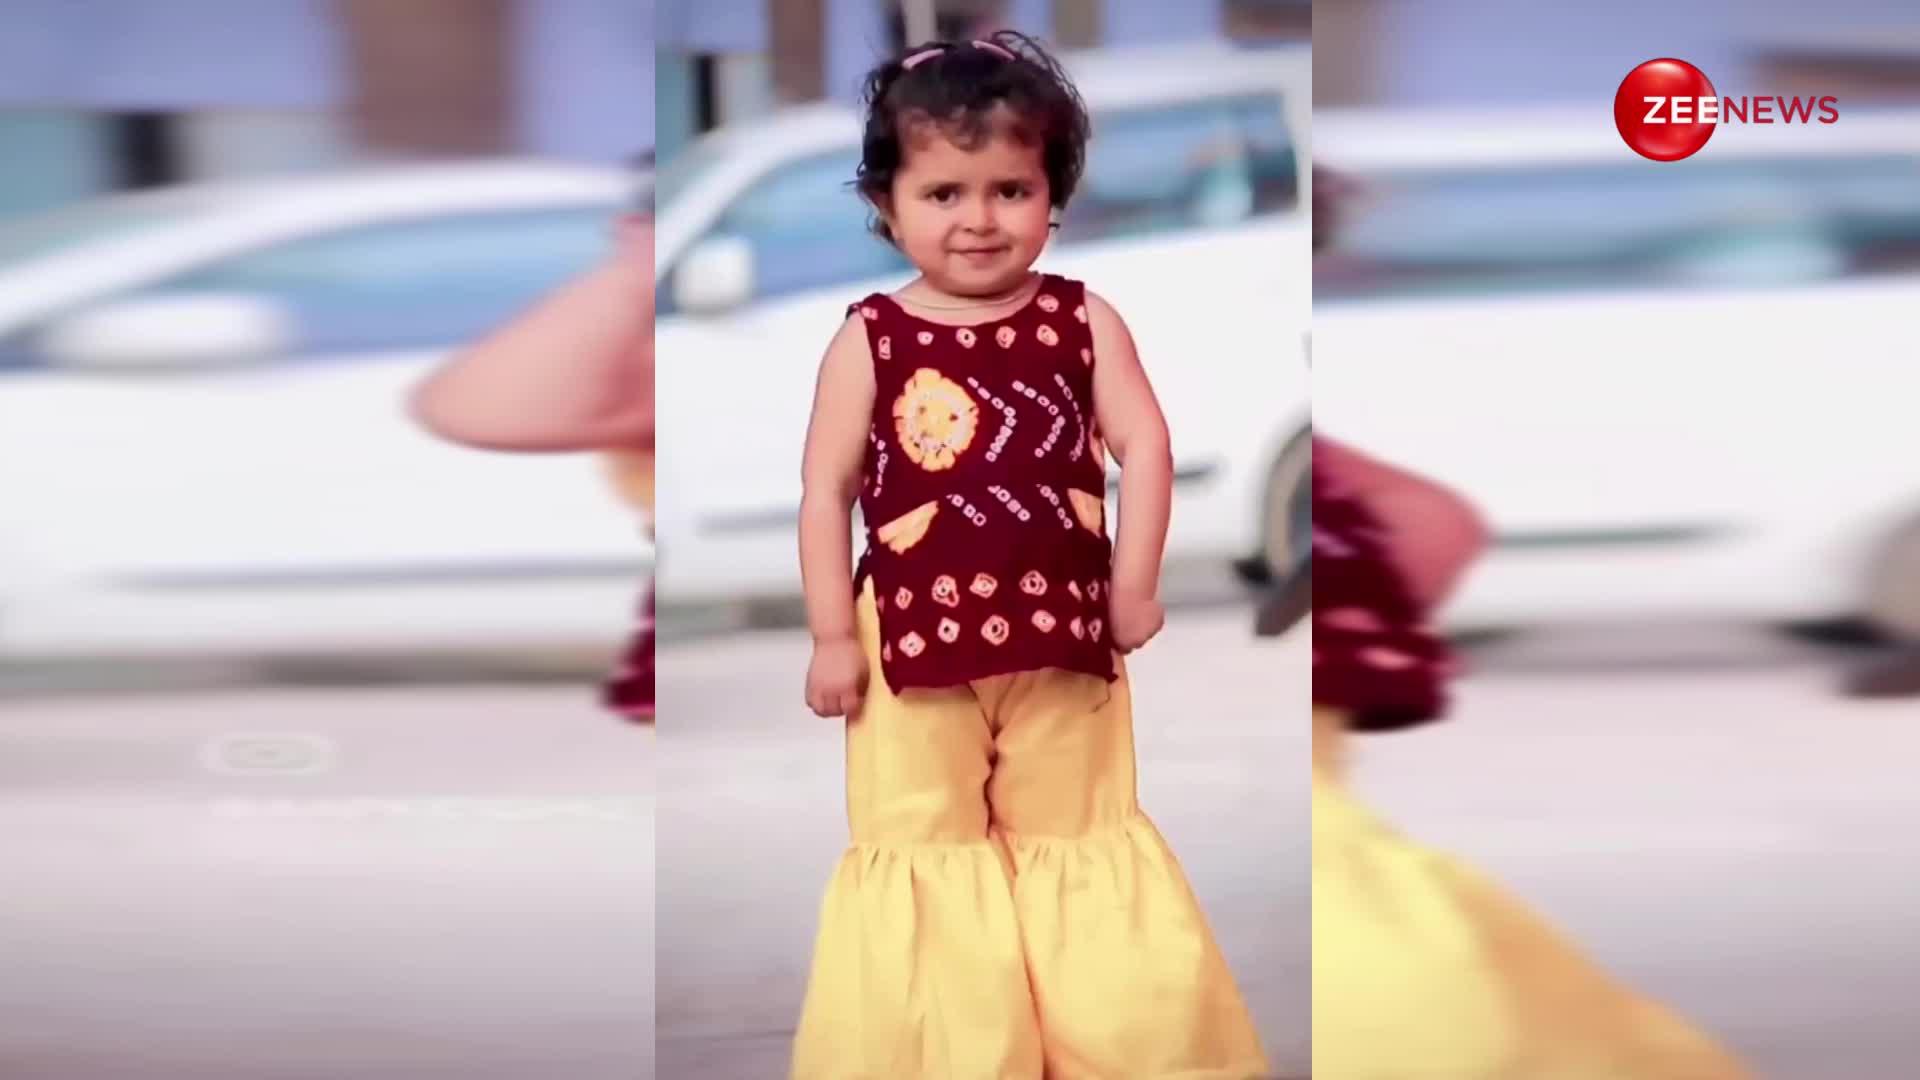 2 साल की नन्ही लड़की ने हरियाणवी गाने पर किया धांसू डांस, देख पब्लिक में मच गया हंगामा